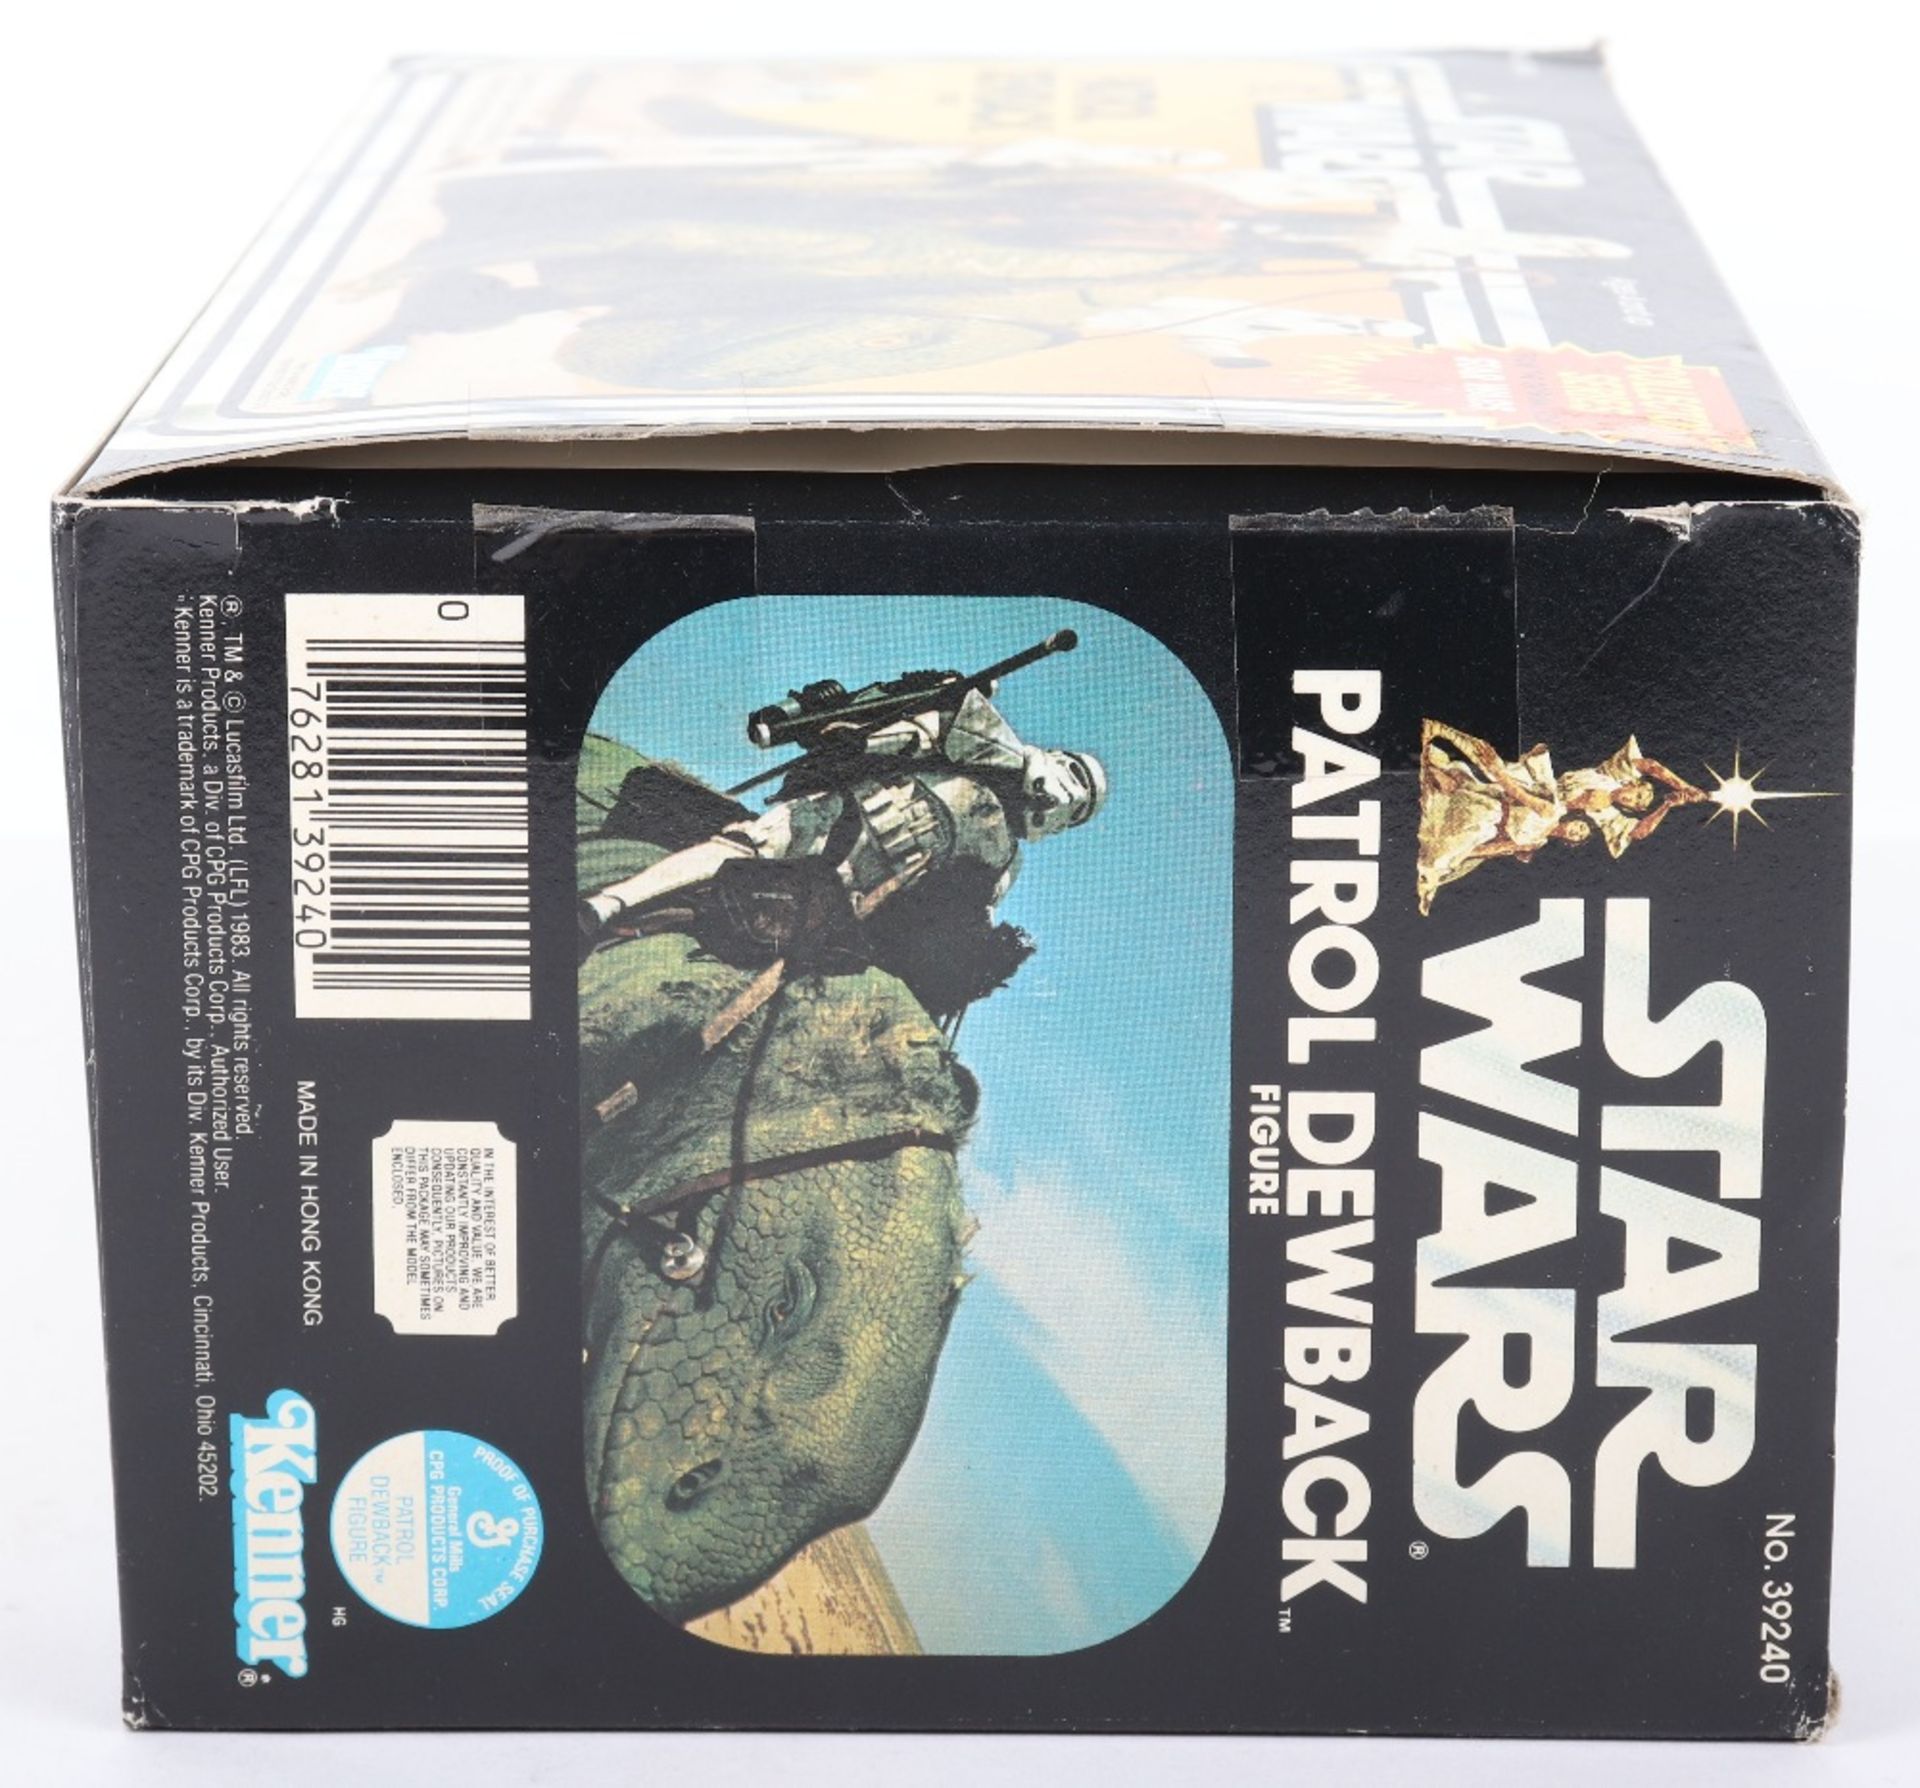 Boxed Kenner Star Wars Patrol Dewback Figure - Image 8 of 11